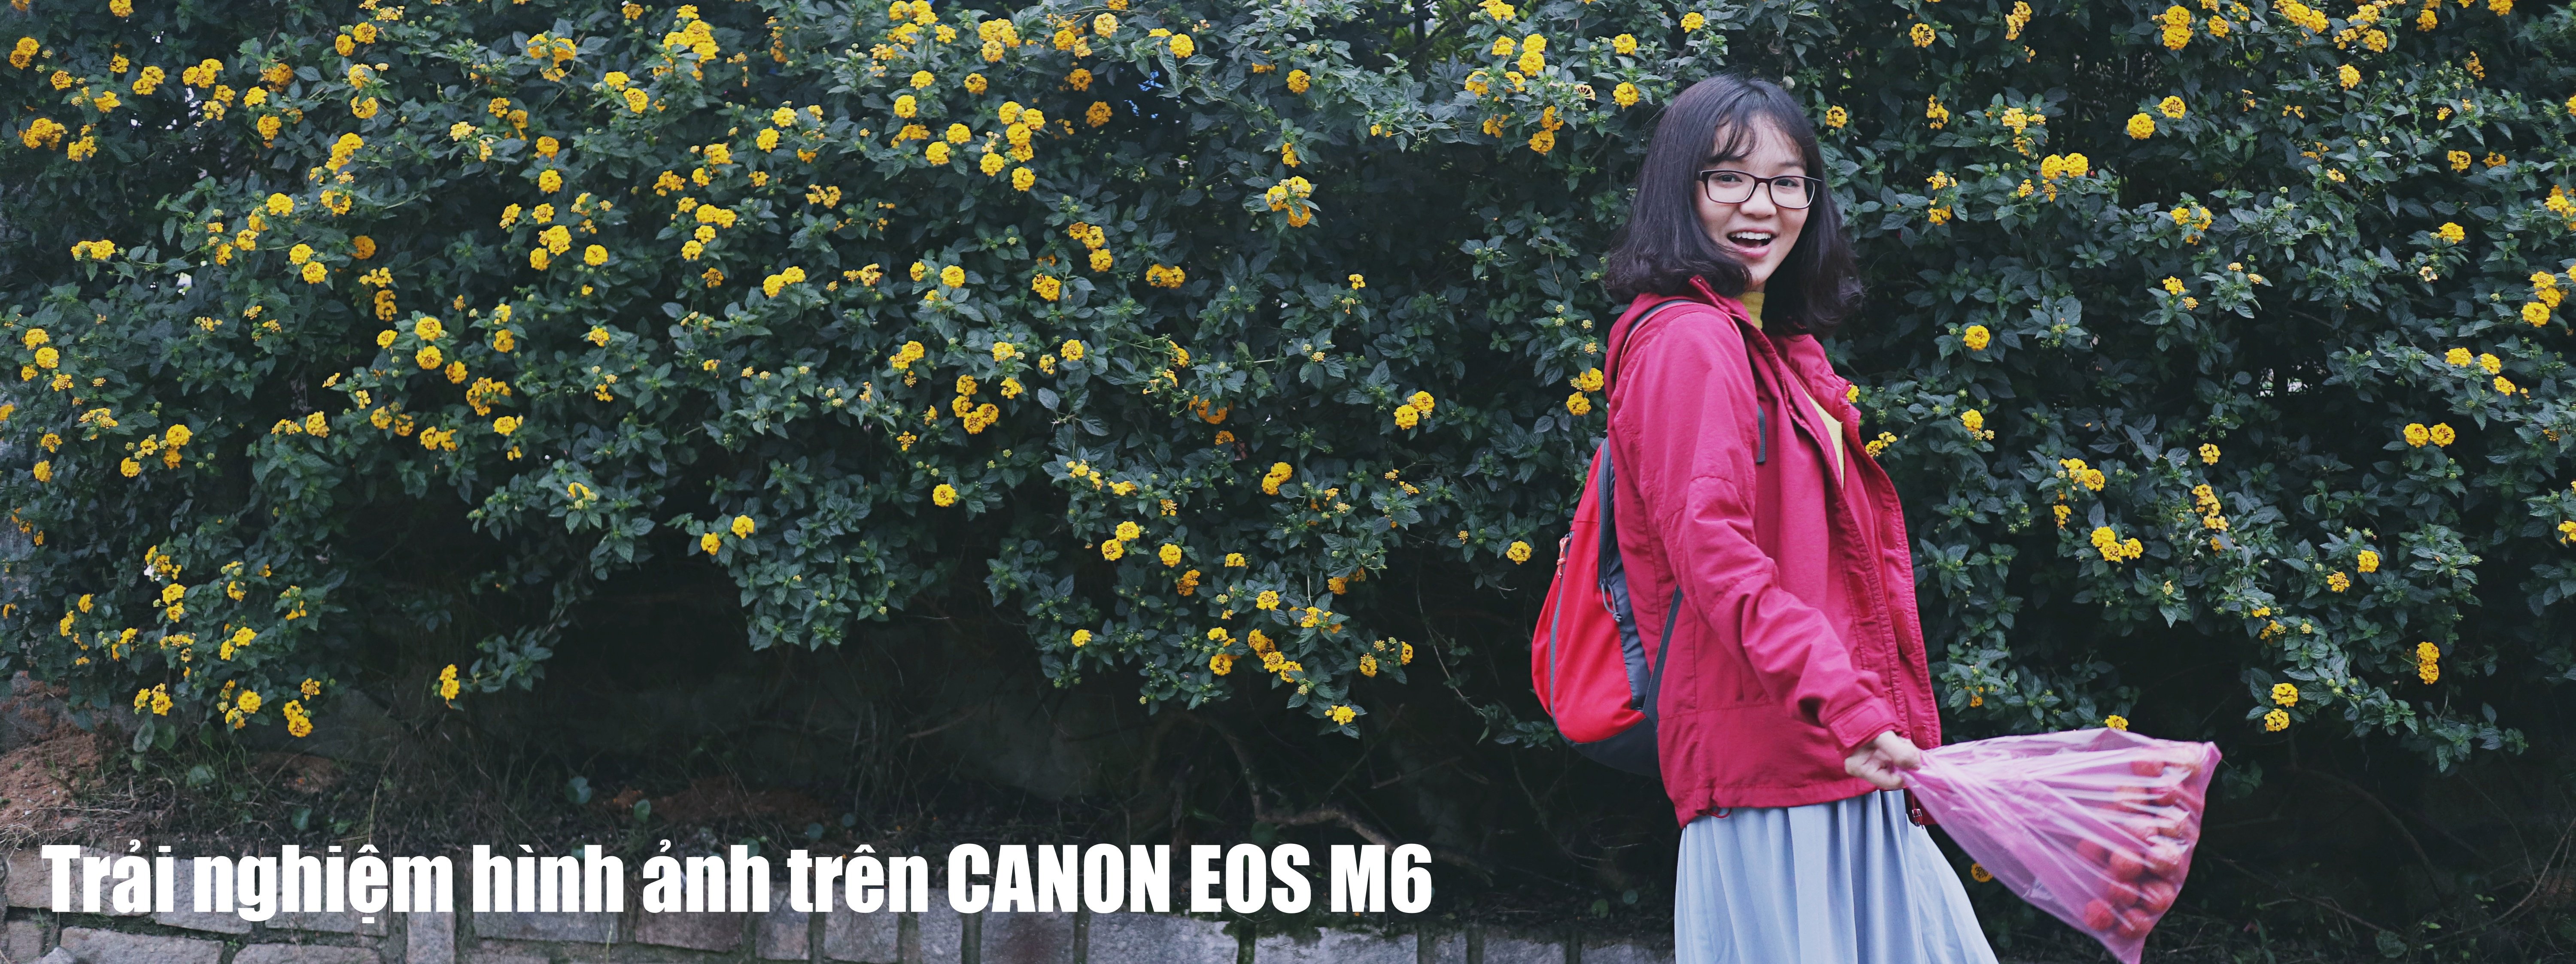 Trải nghiệm hình ảnh trên Canon EOS M6